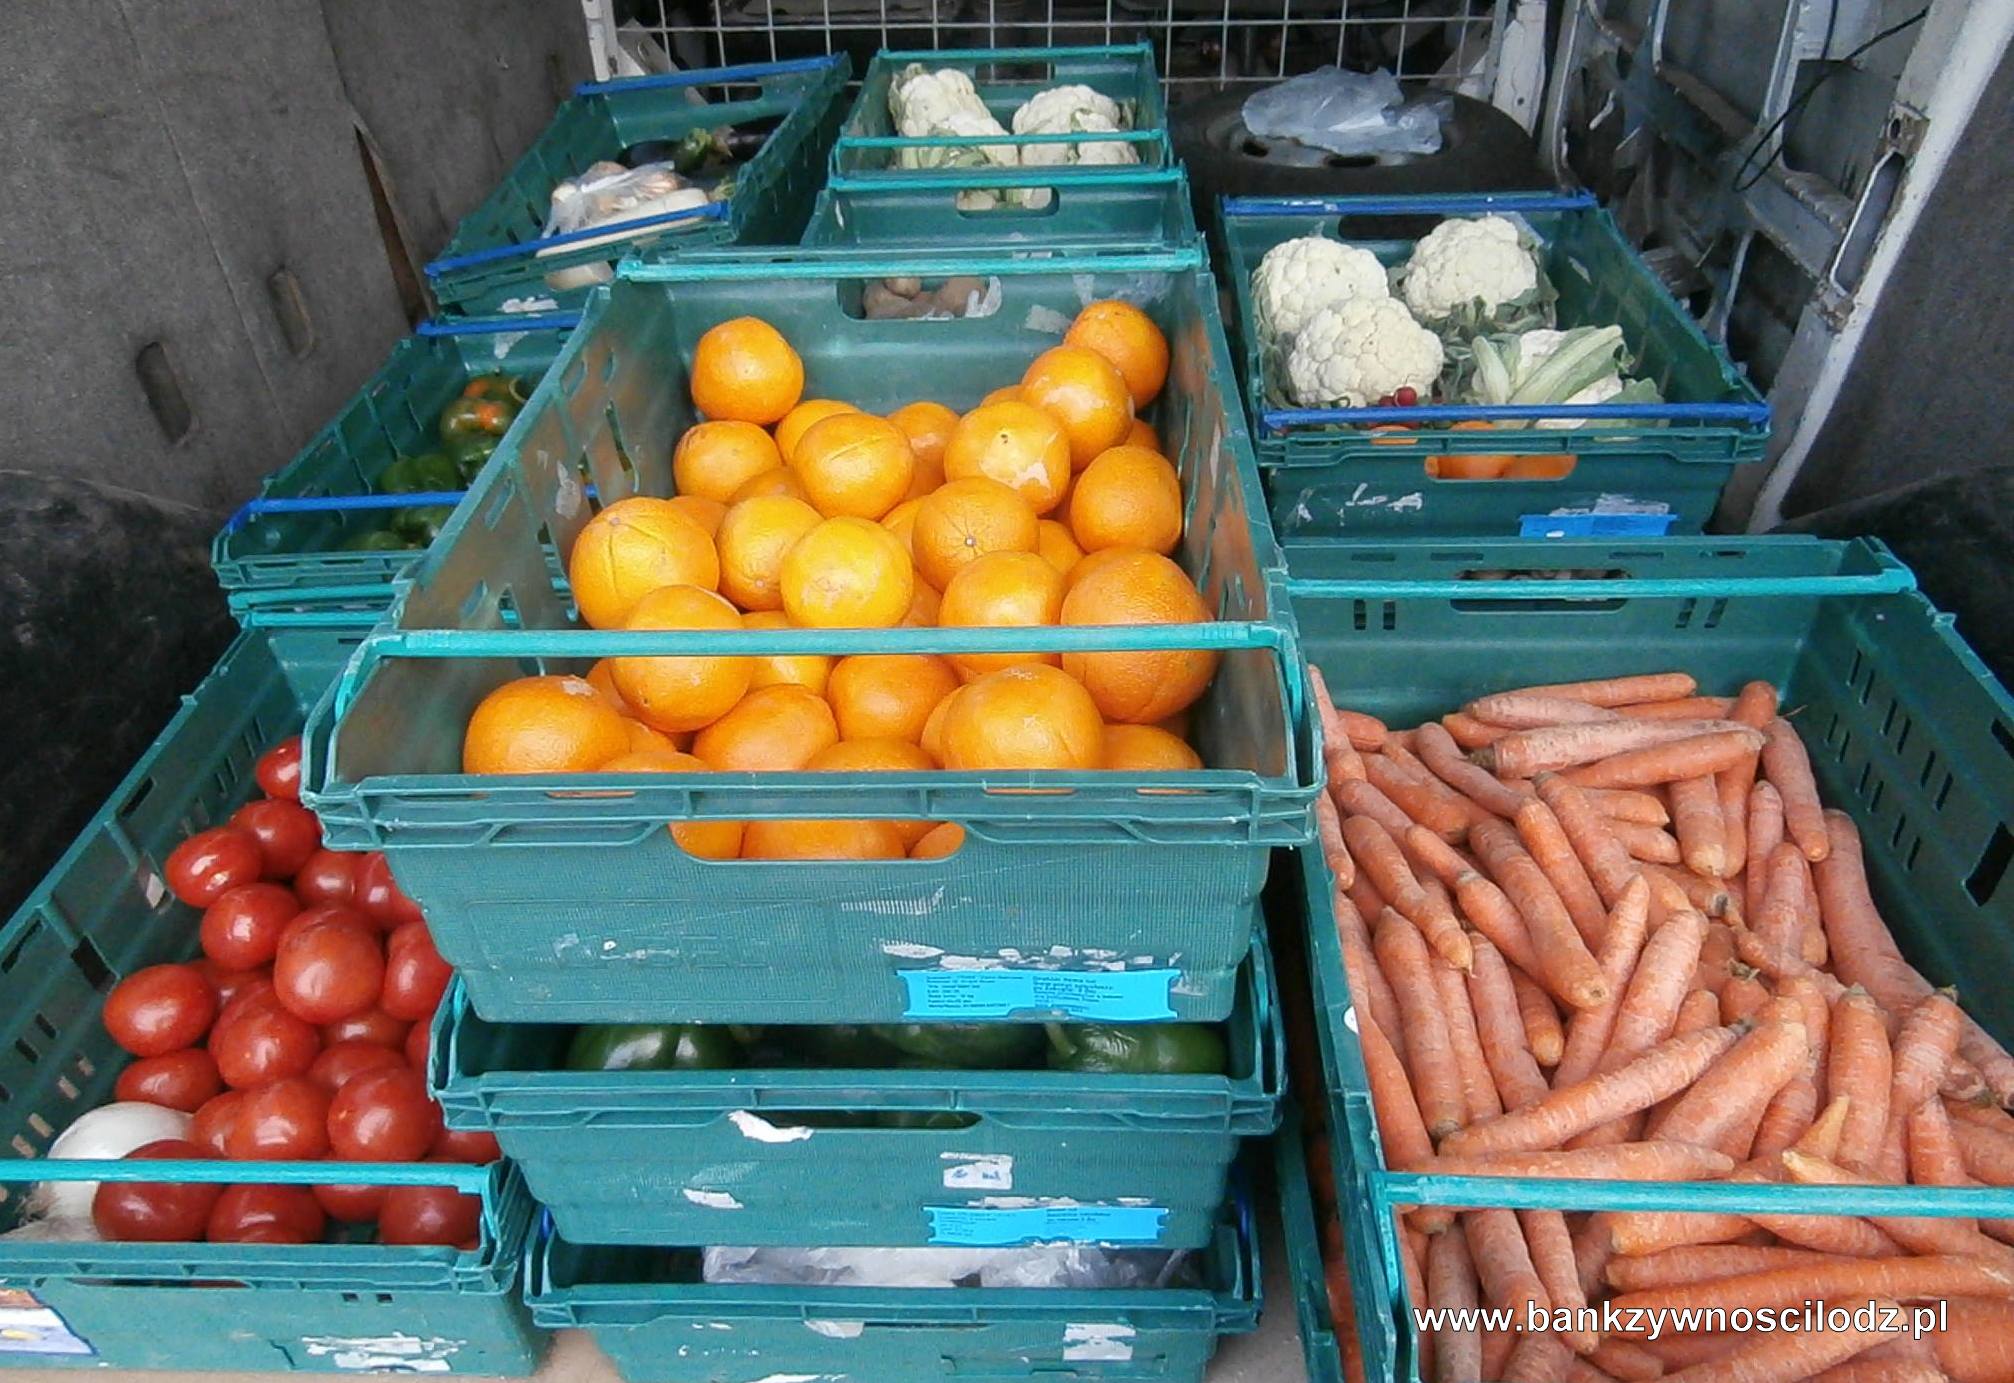 Tesco przekazało Bankom Żywności już ponad 100 ton produktów spożywczych